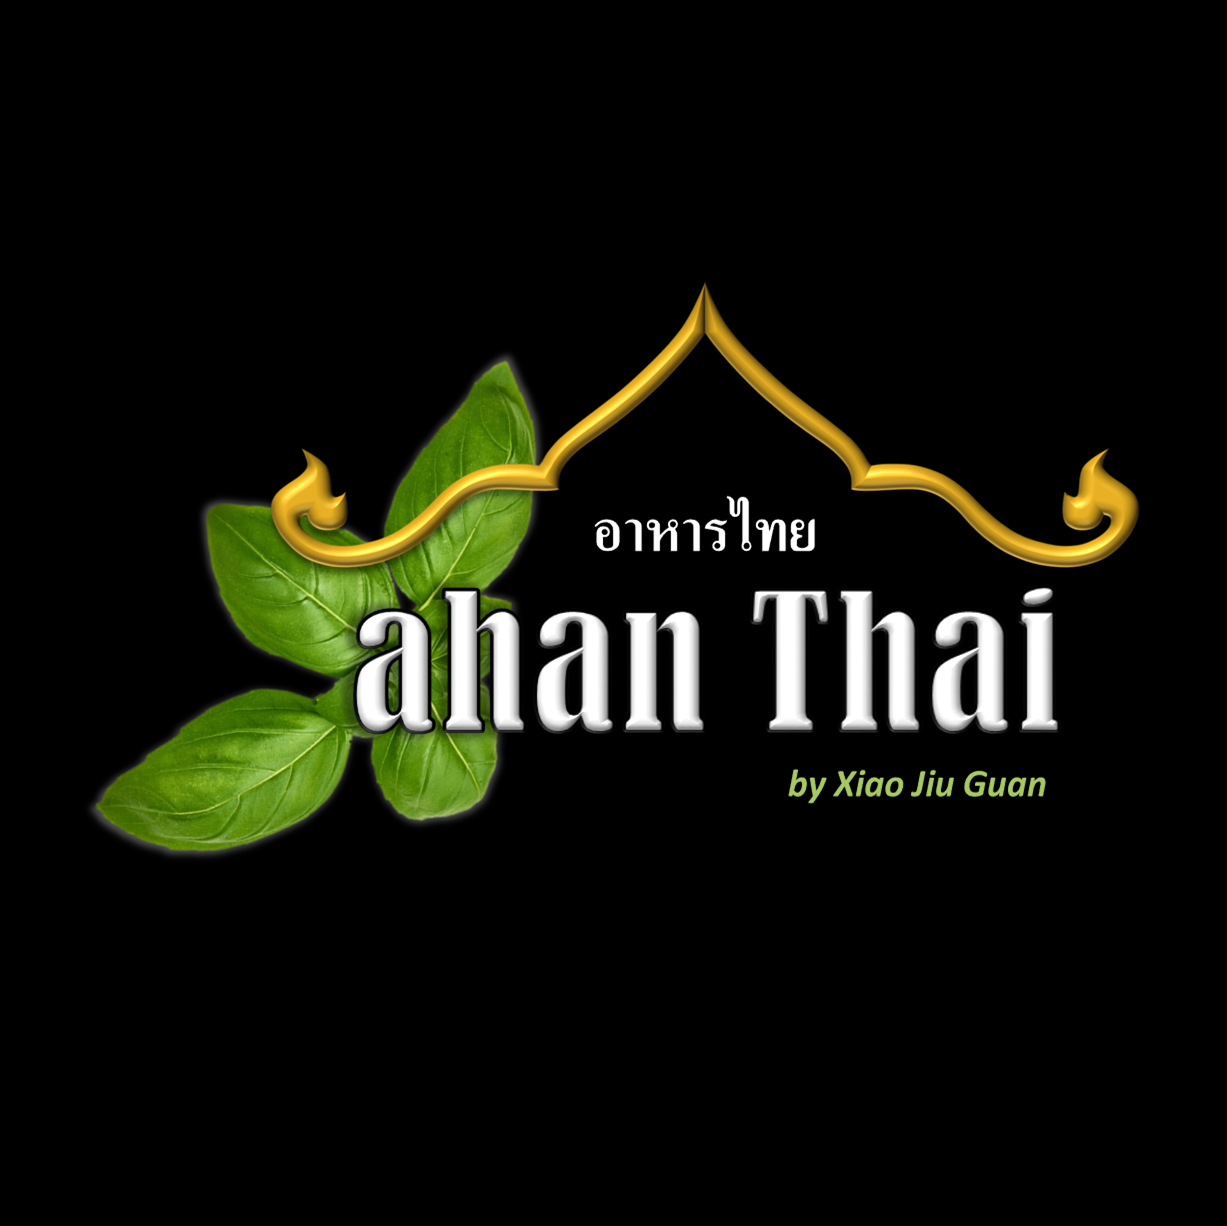 ahan-thai-logo